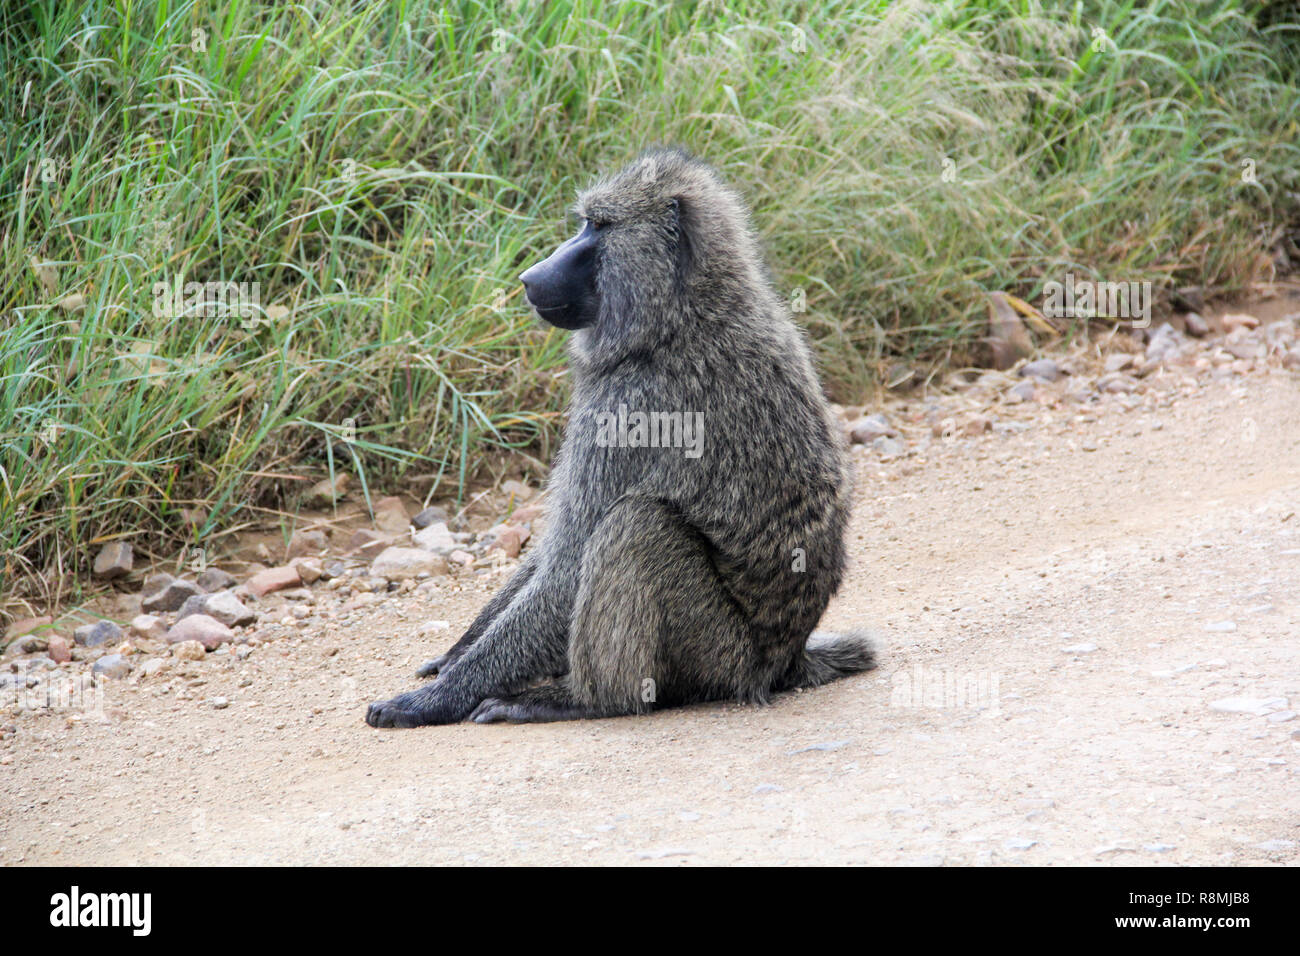 OLIVE BABOON: Einer der Affenarten im Ngorongoro Krater. Das Foto wurde im Mai 2018 getroffen, während auf Safari. Nicht als gefährdet. Stockfoto